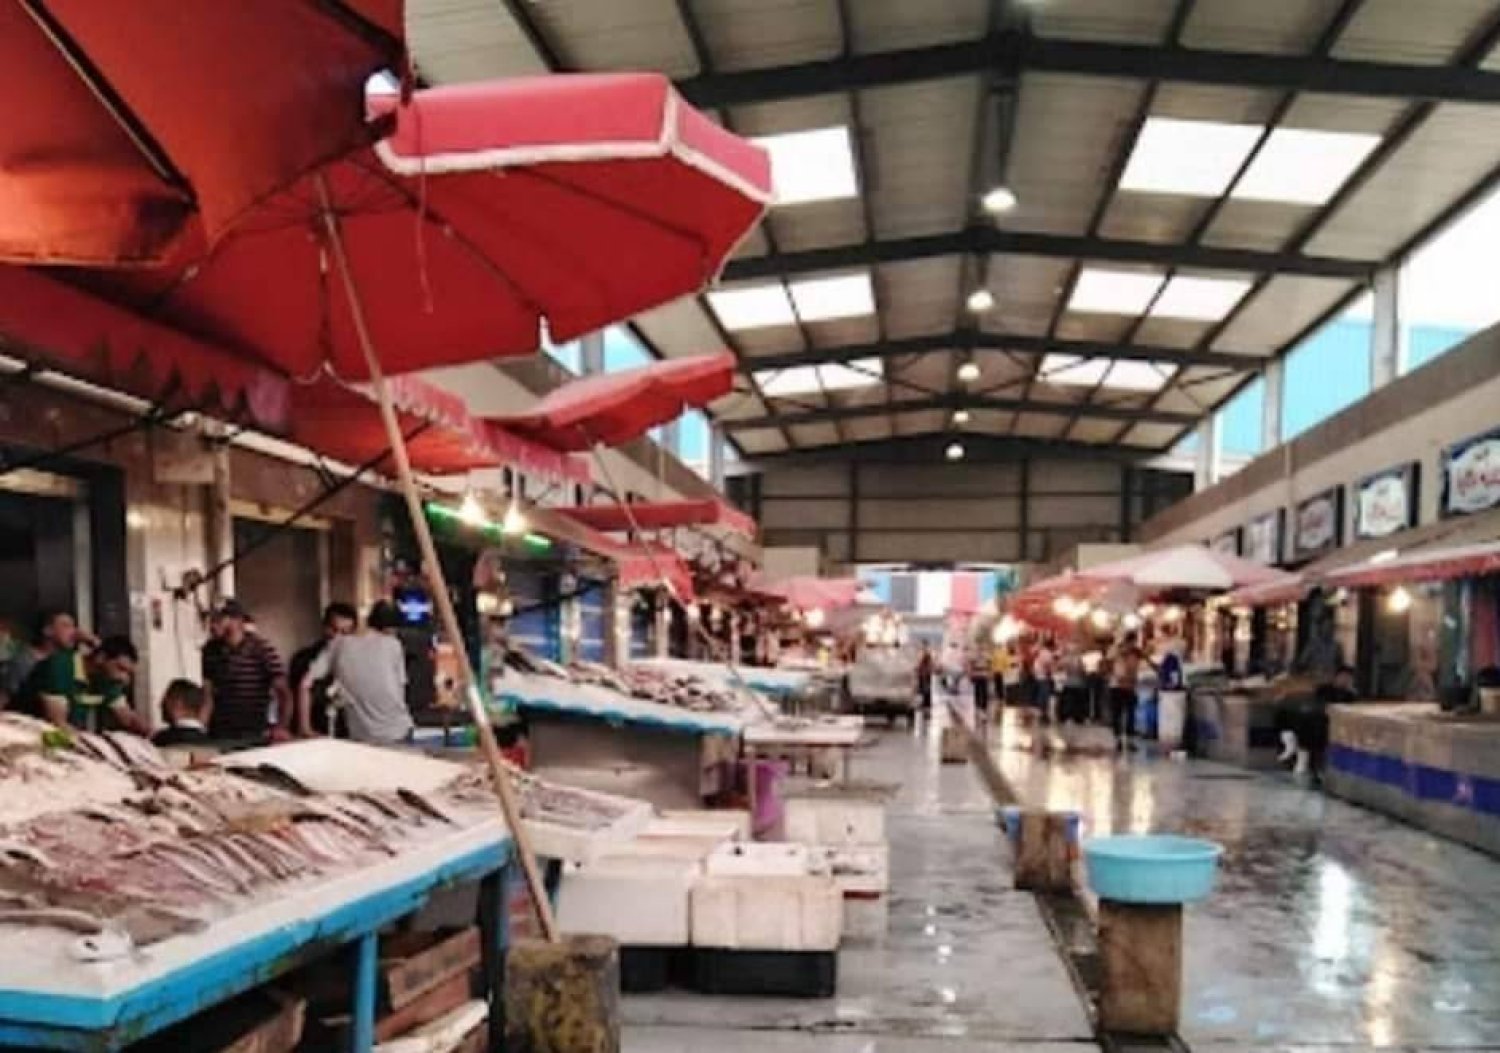 مشاهد من أسواق السمك في بورسعيد بدون زبائن (مشاركون بحملة المقاطعة - إكس)